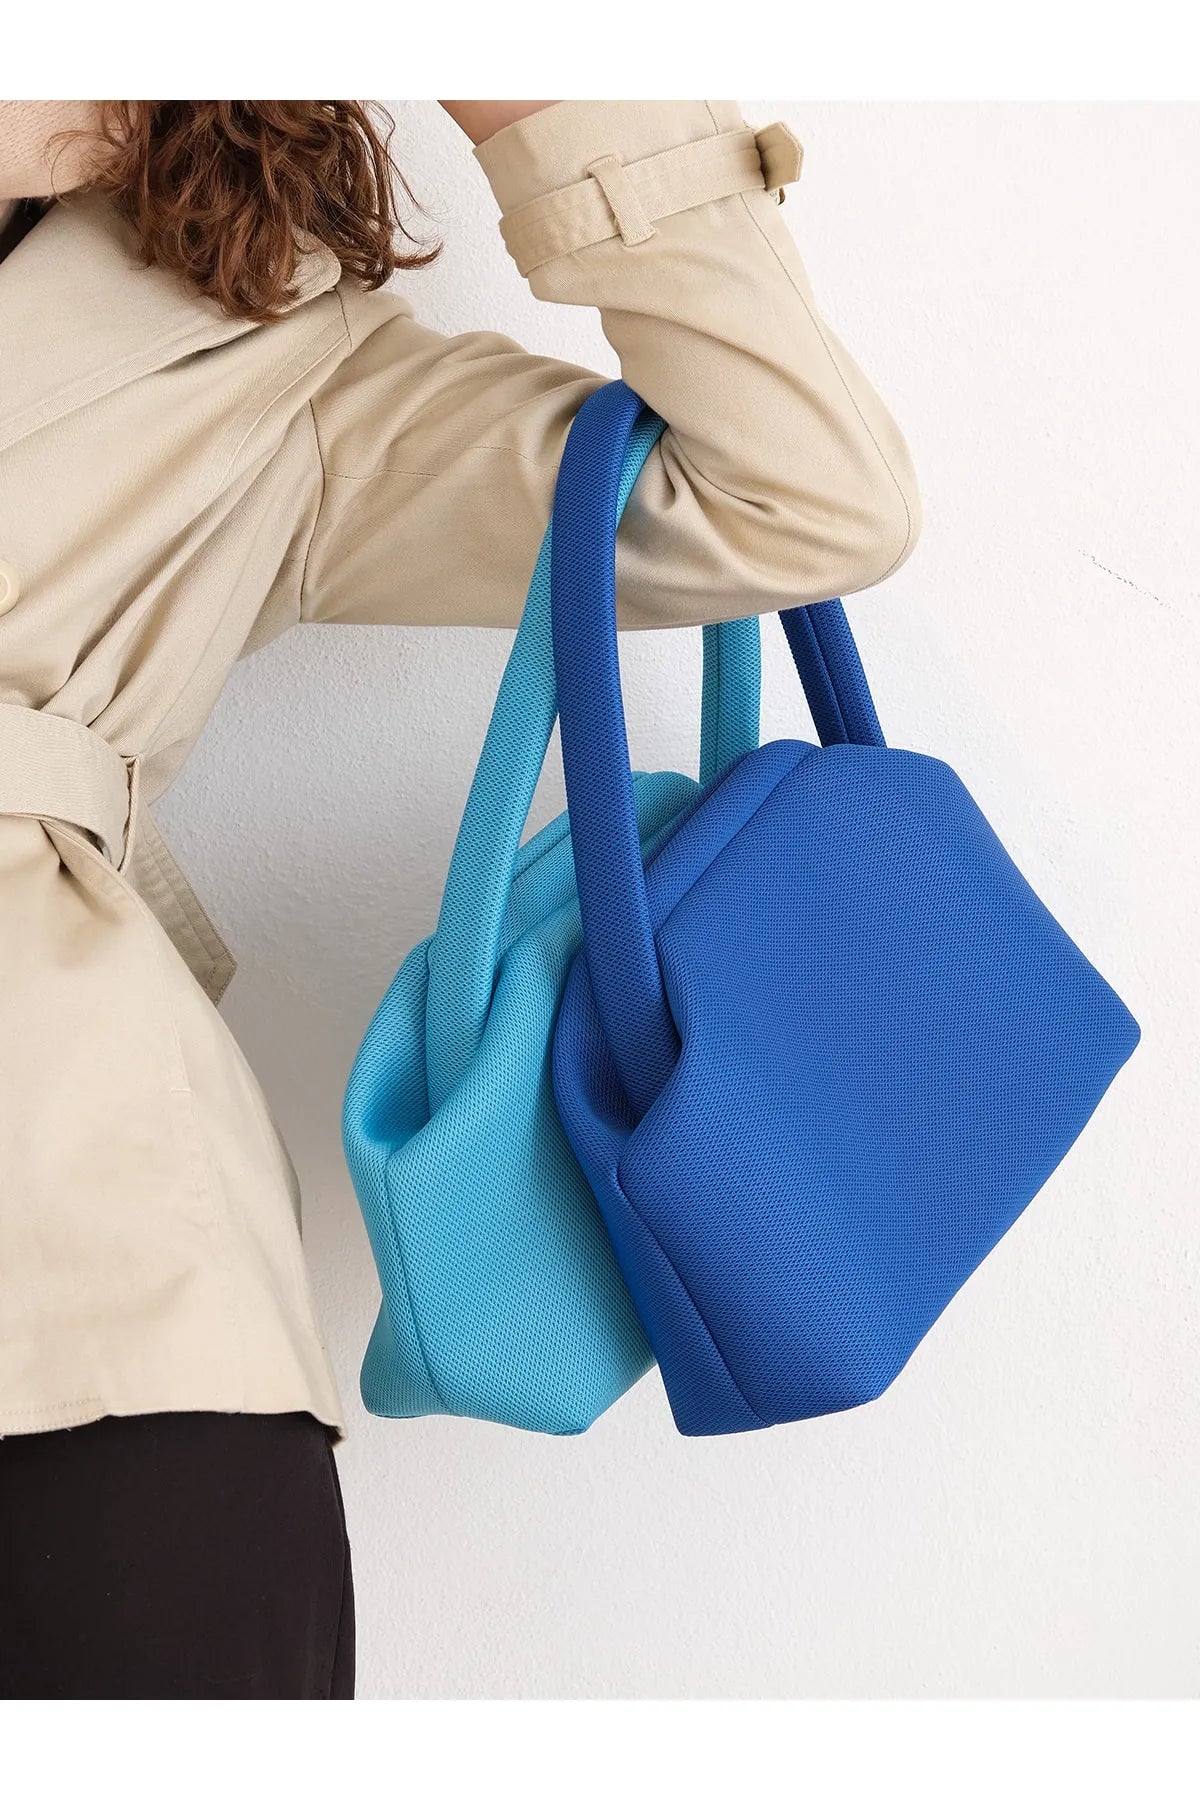 Sax Blue Shoulder Bag shoulder bag LUNARITY GARAGE   